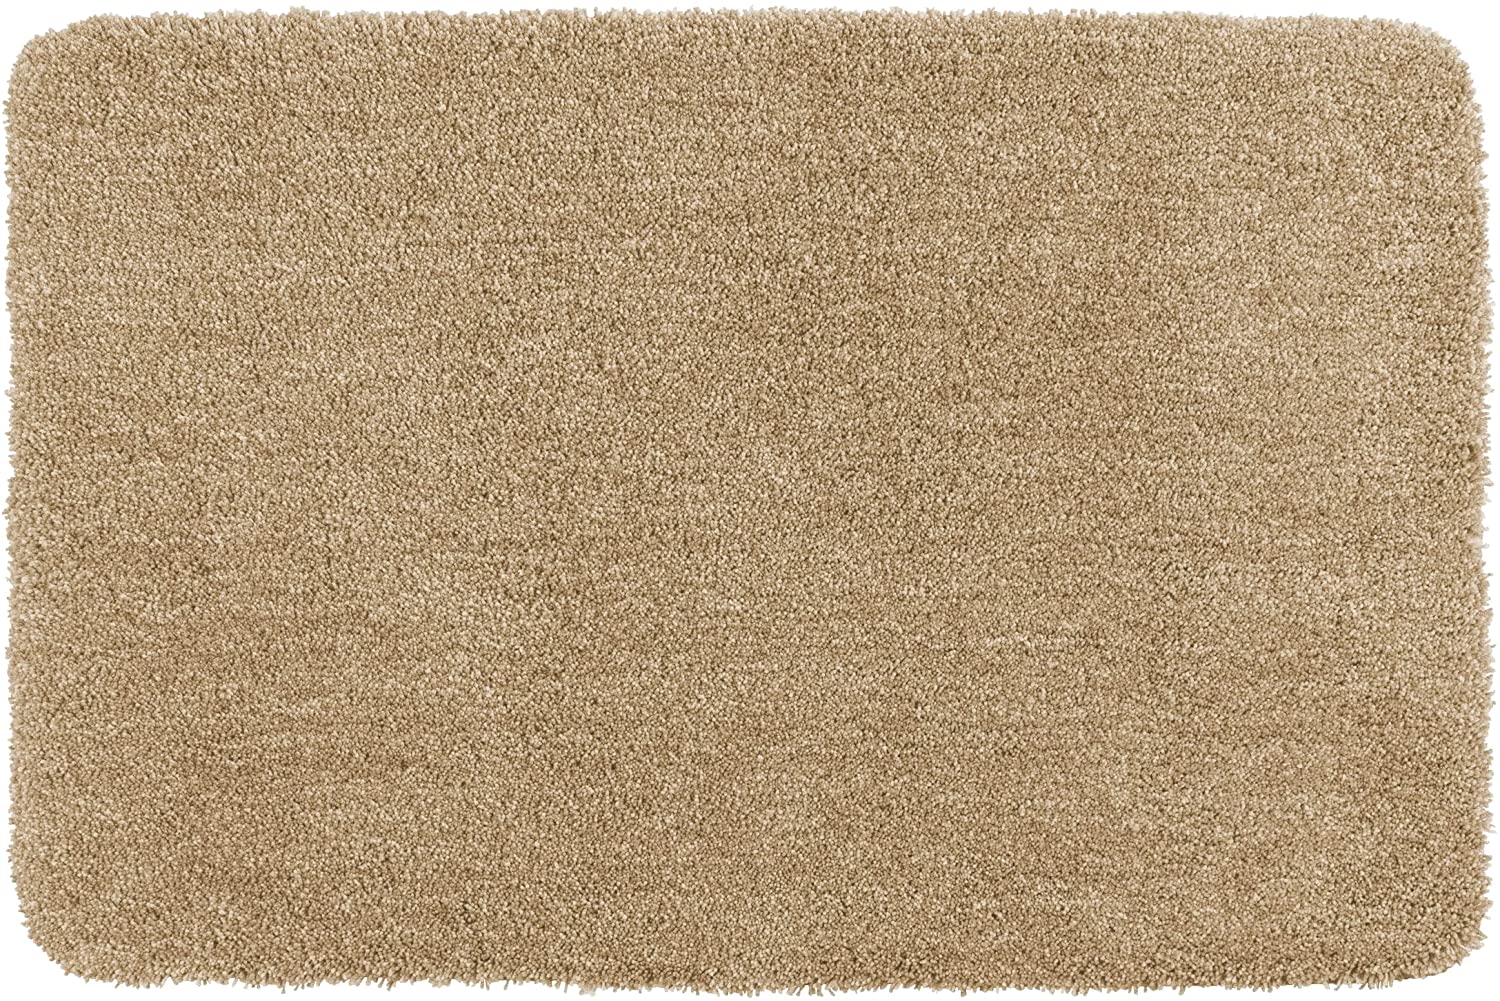 Badteppich Mélange Sand, 60 x 90 cm - Badematte, sicher, flauschig, fusselfrei, Polyester, 60 x 90 cm, Beige